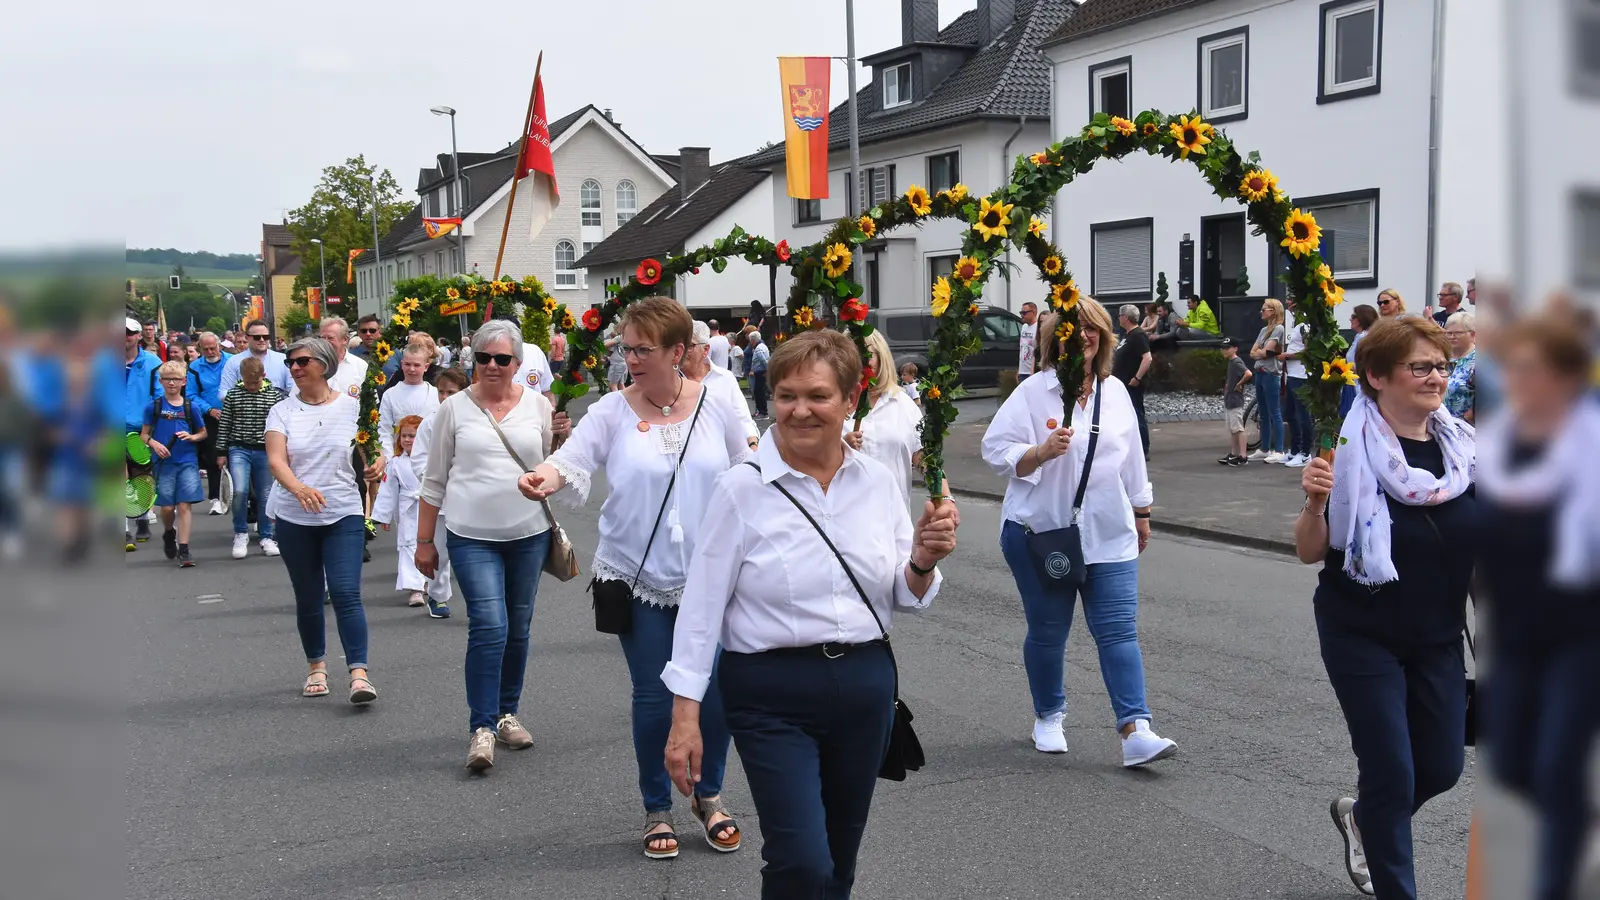 Festzug zum Ortsjubiläum 675 Jahre Lauenförde. (Foto: Peter Vössing)